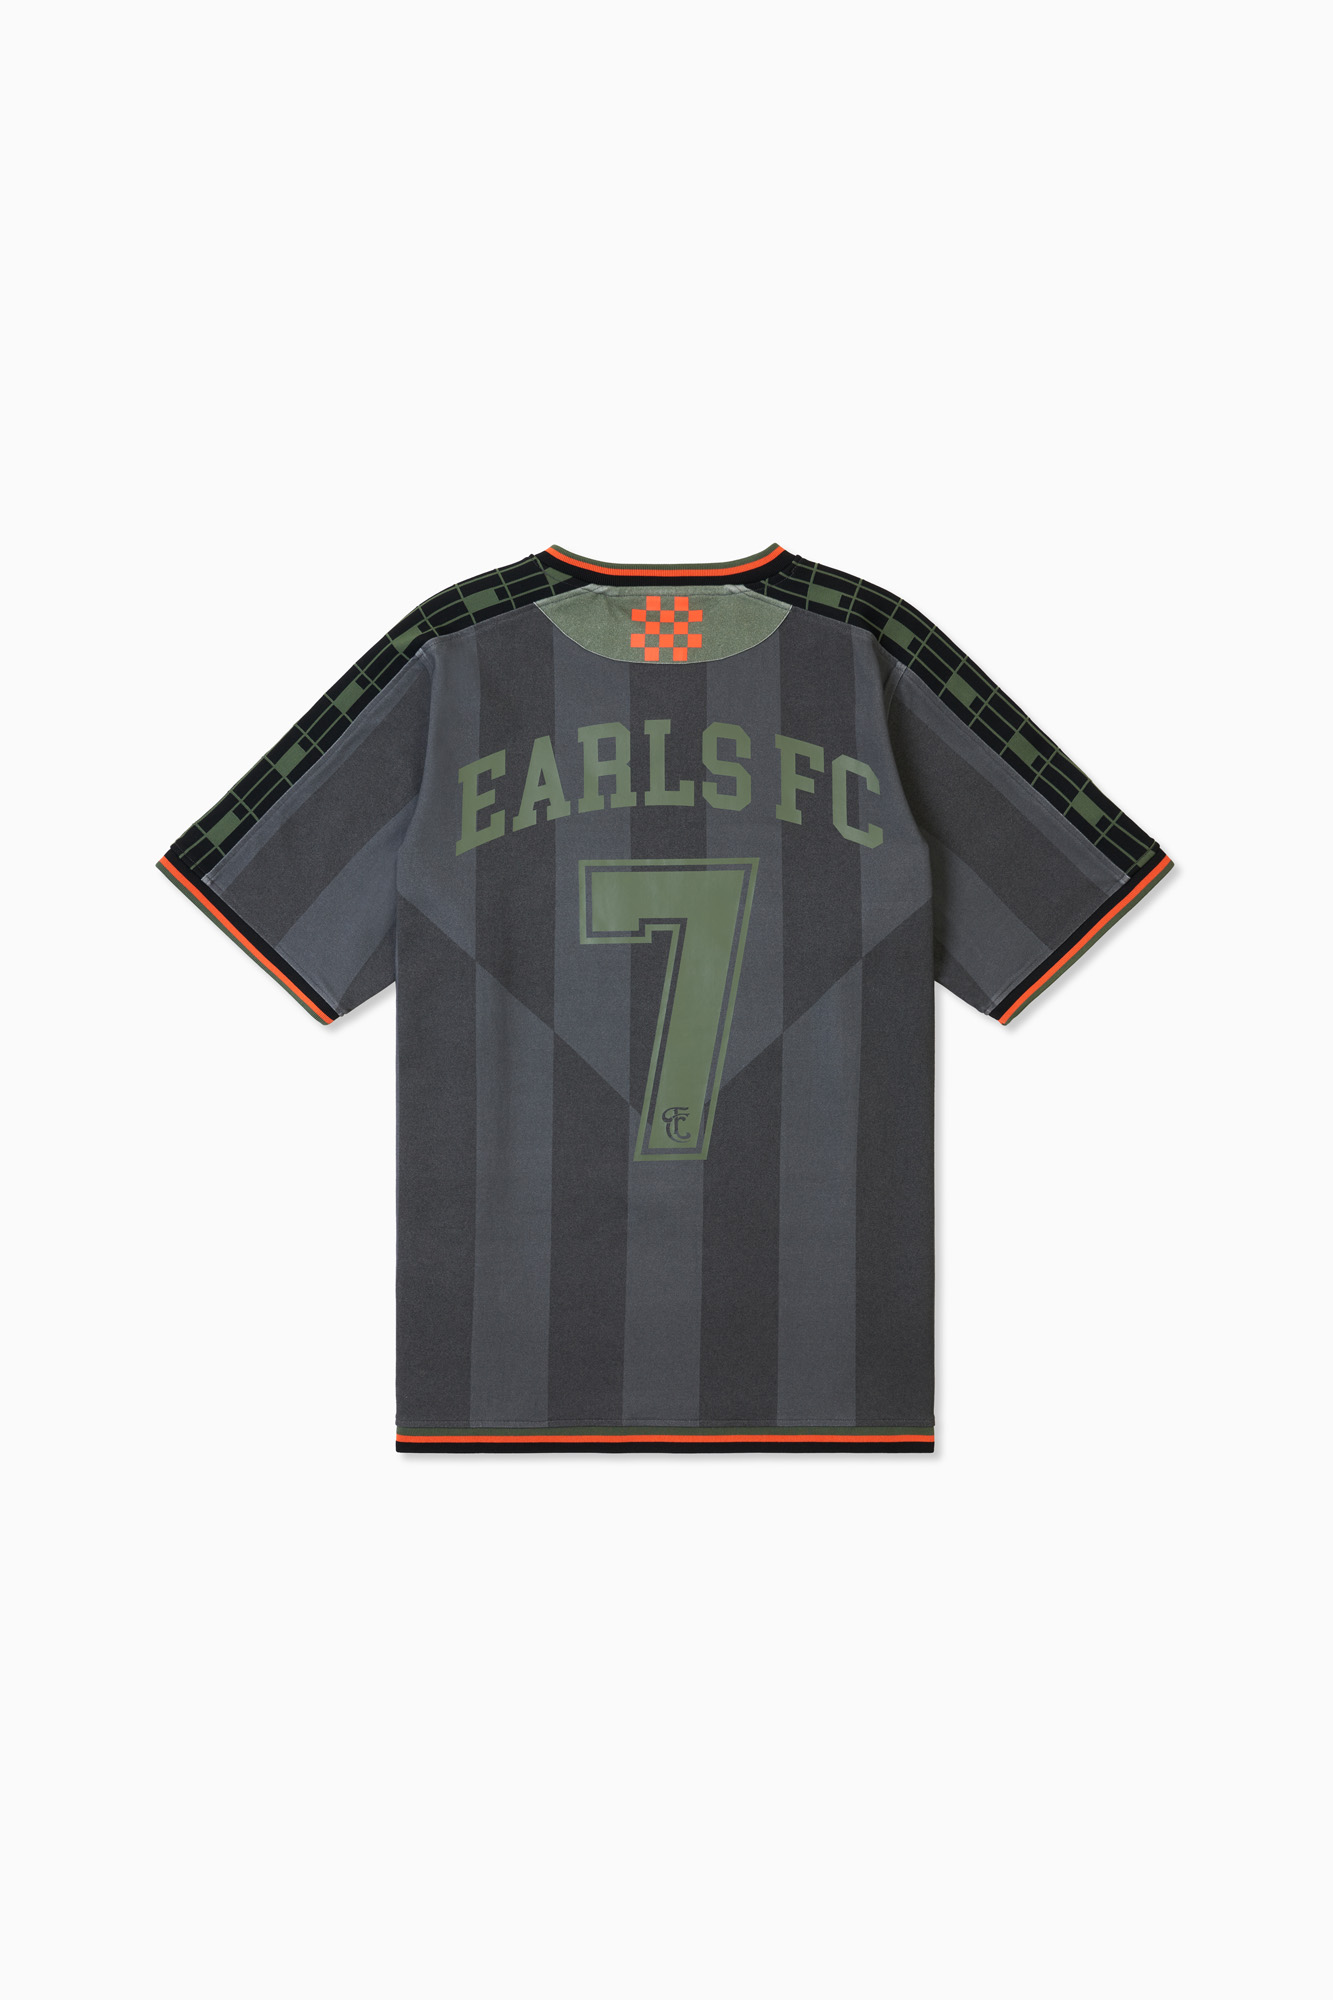 Earls FC - Soccer Jersey